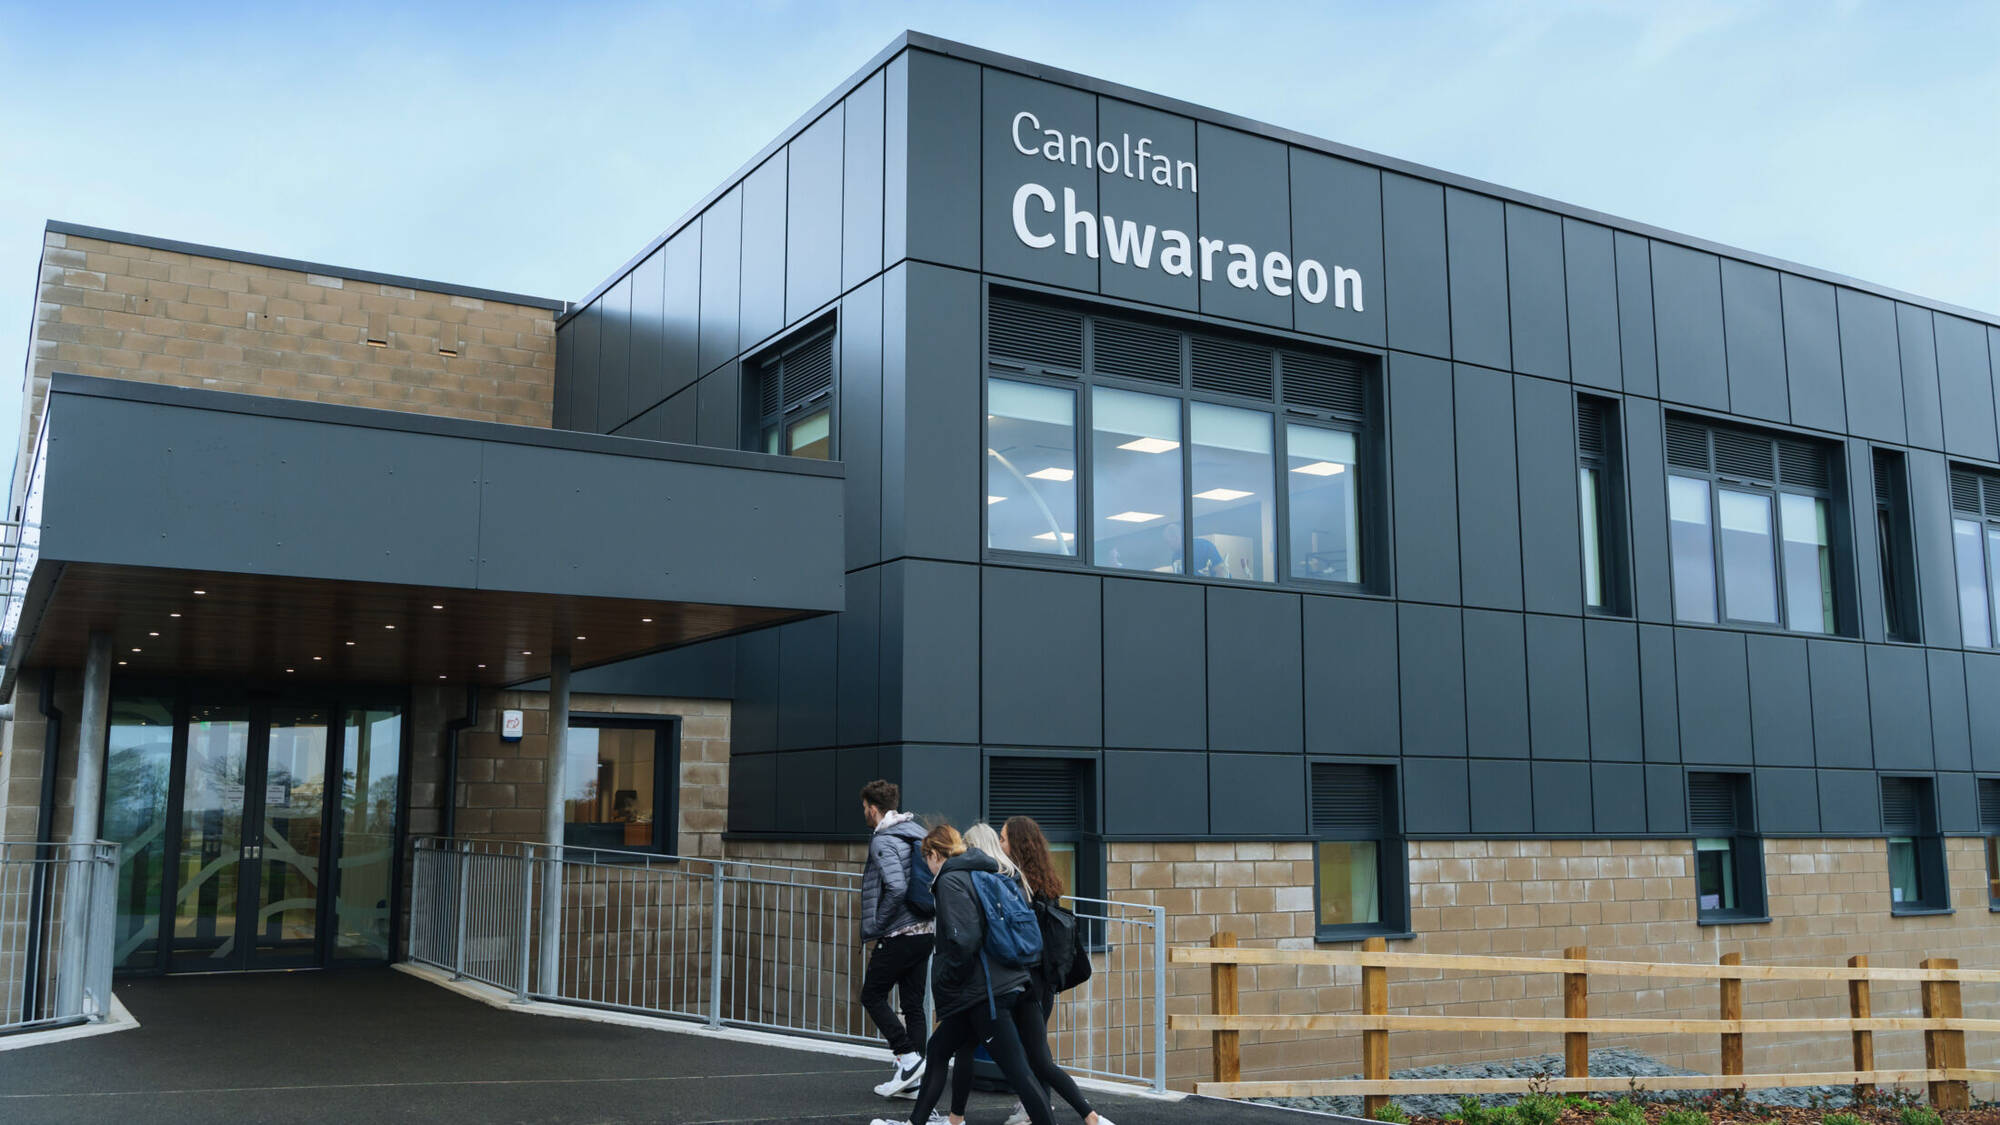 Canolfan Chwaraeon at Llangefni campus